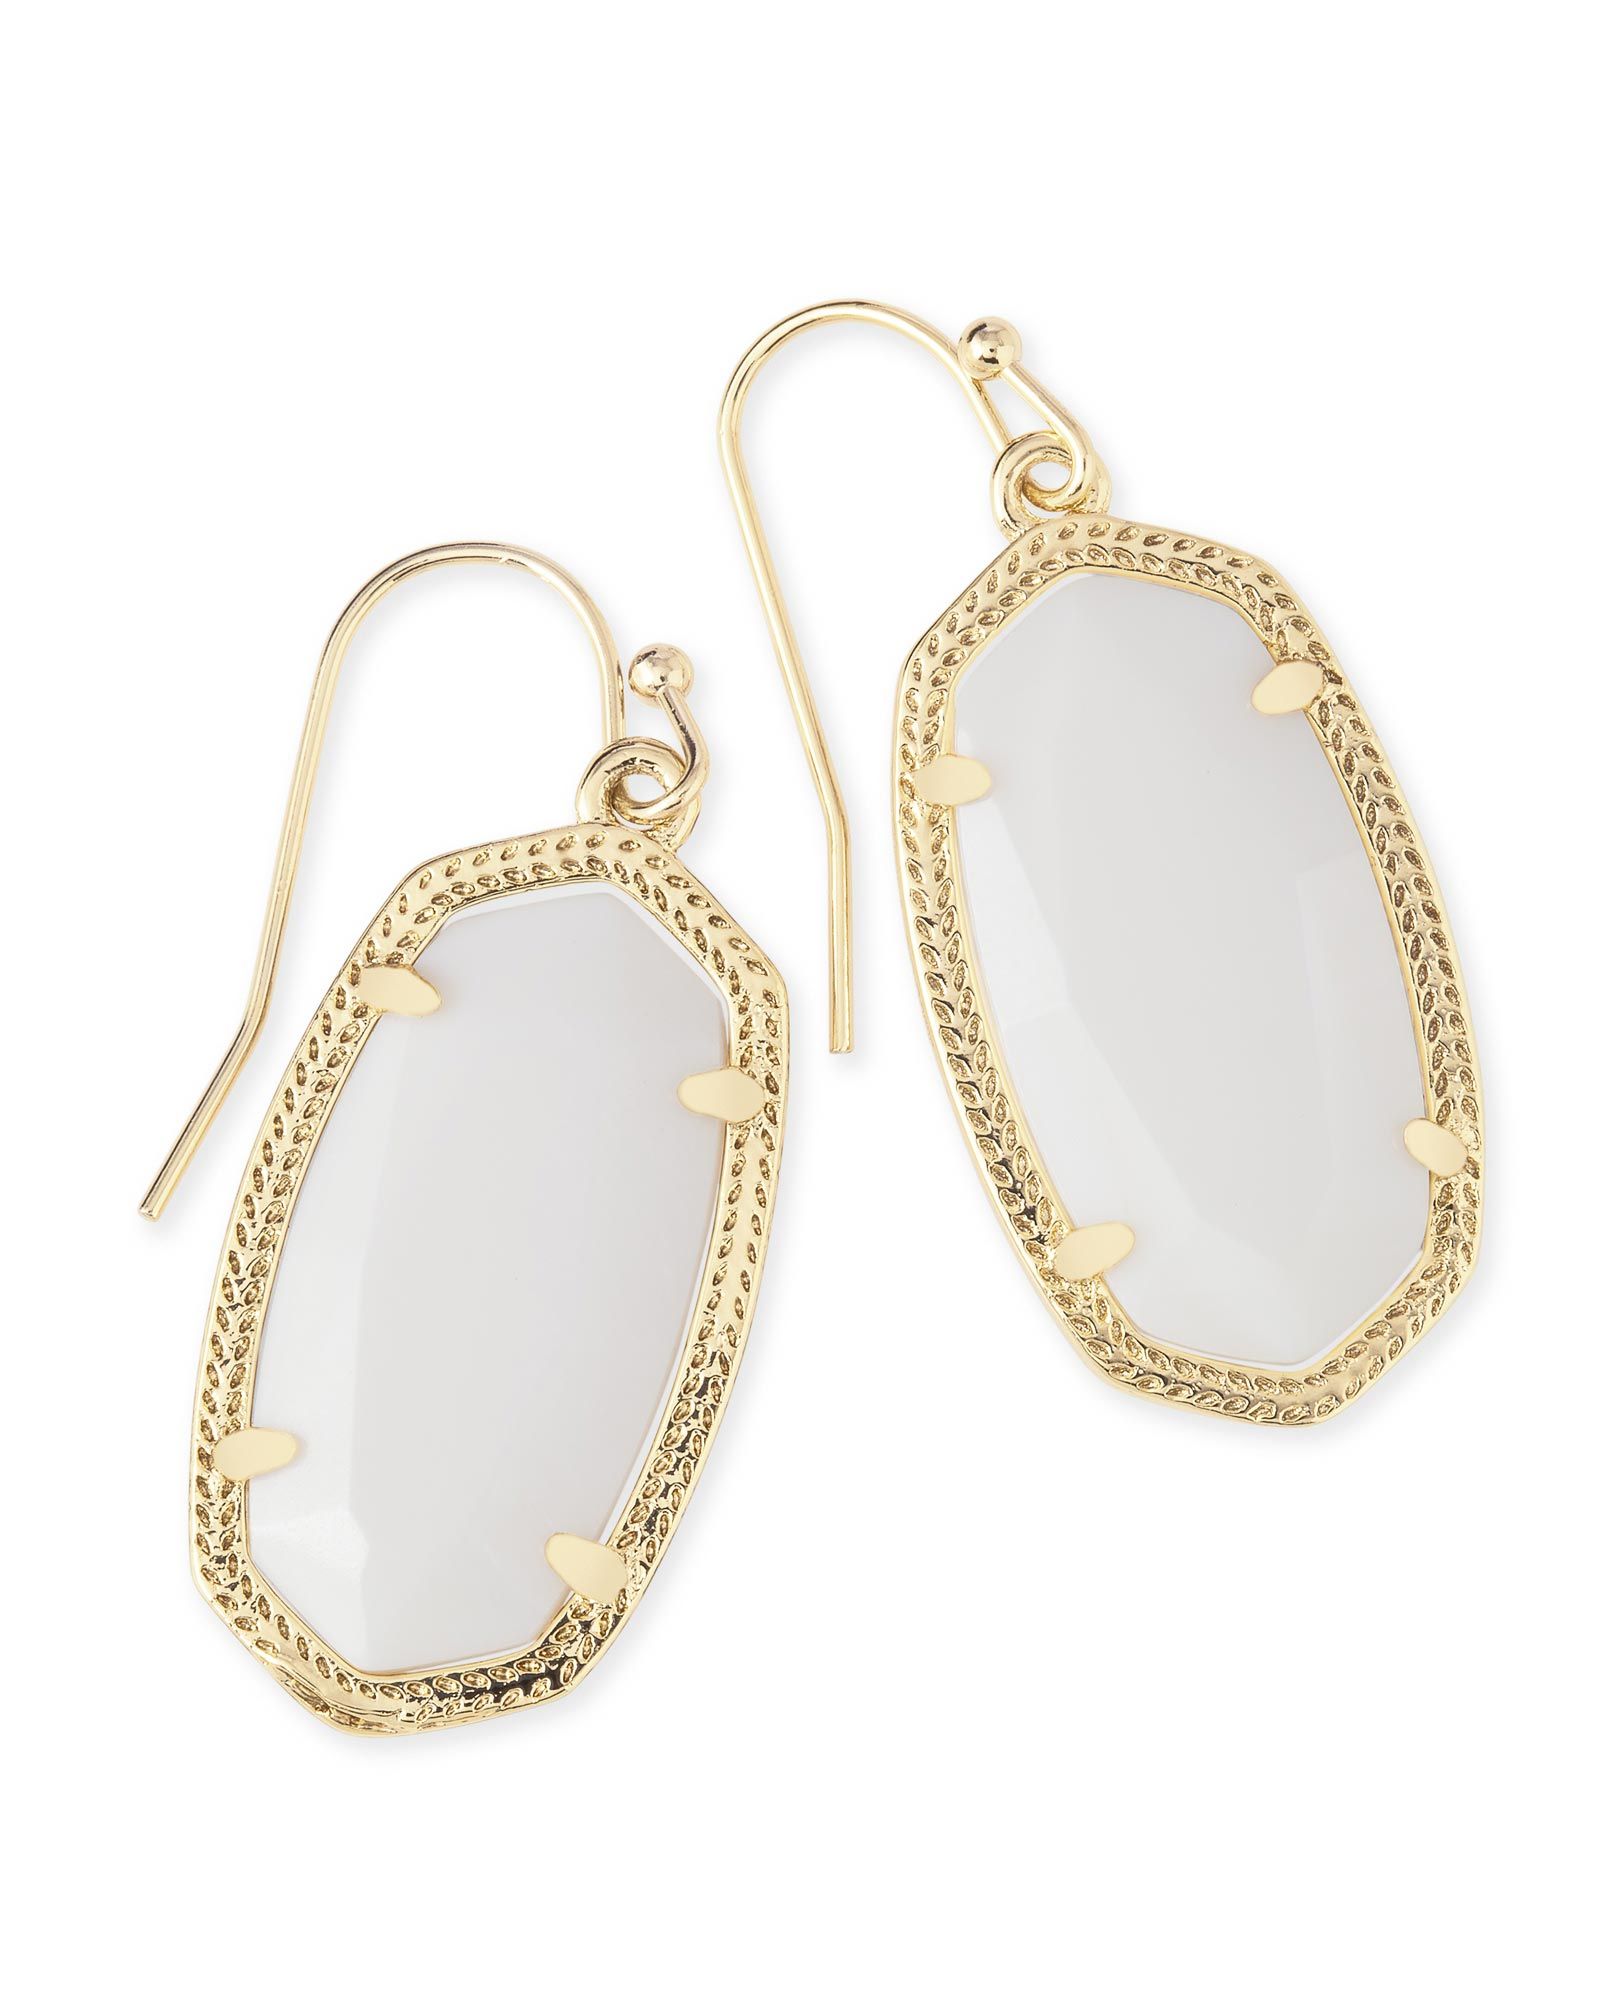 Dani Gold Earrings in White Pearl | Kendra Scott